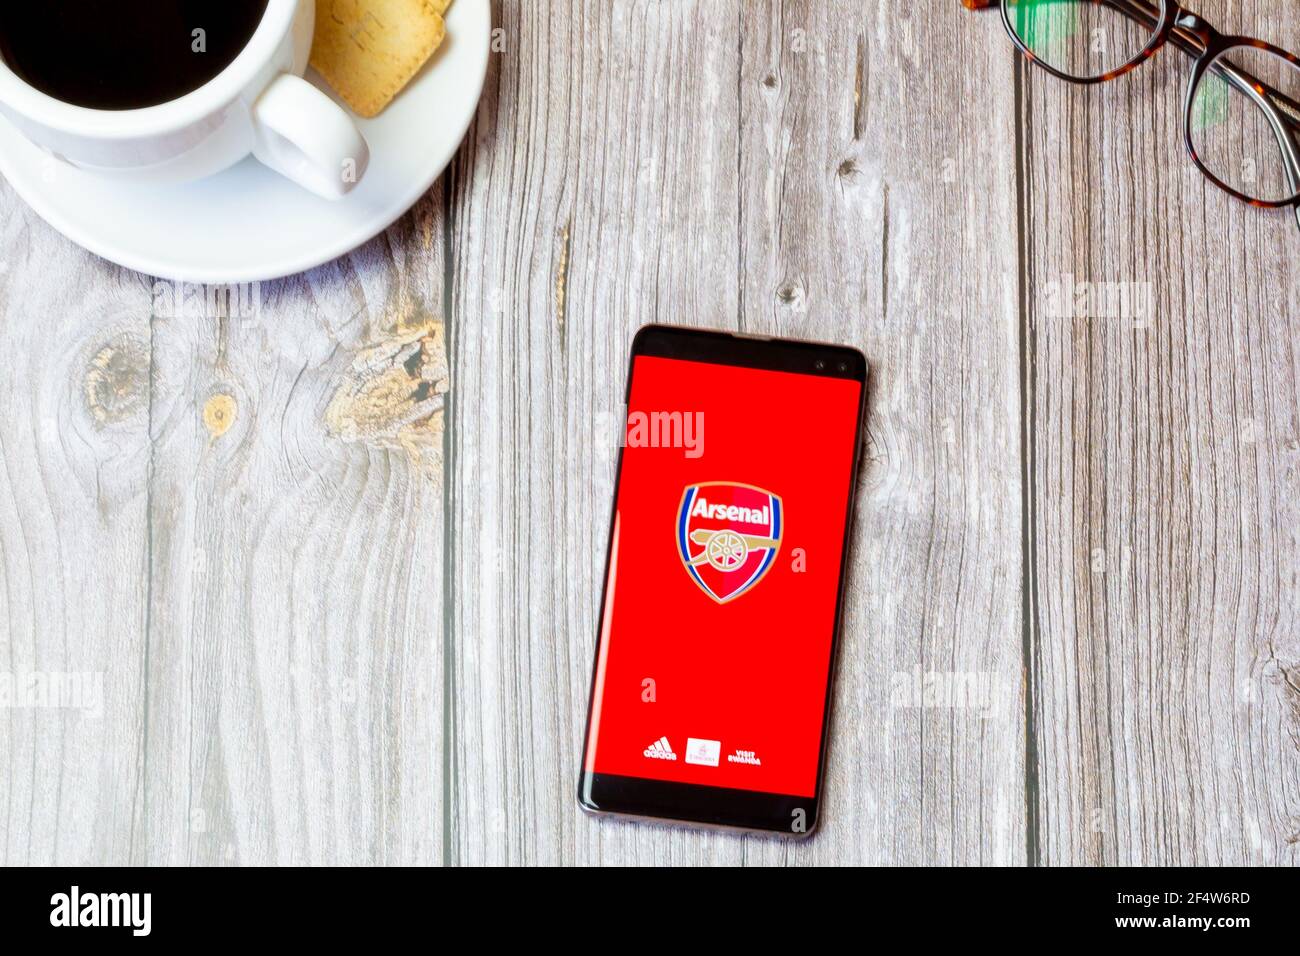 Un telefono cellulare o un telefono cellulare posato su un legno Tavolo con l'app Arsenal Football Club aperta sullo schermo Foto Stock